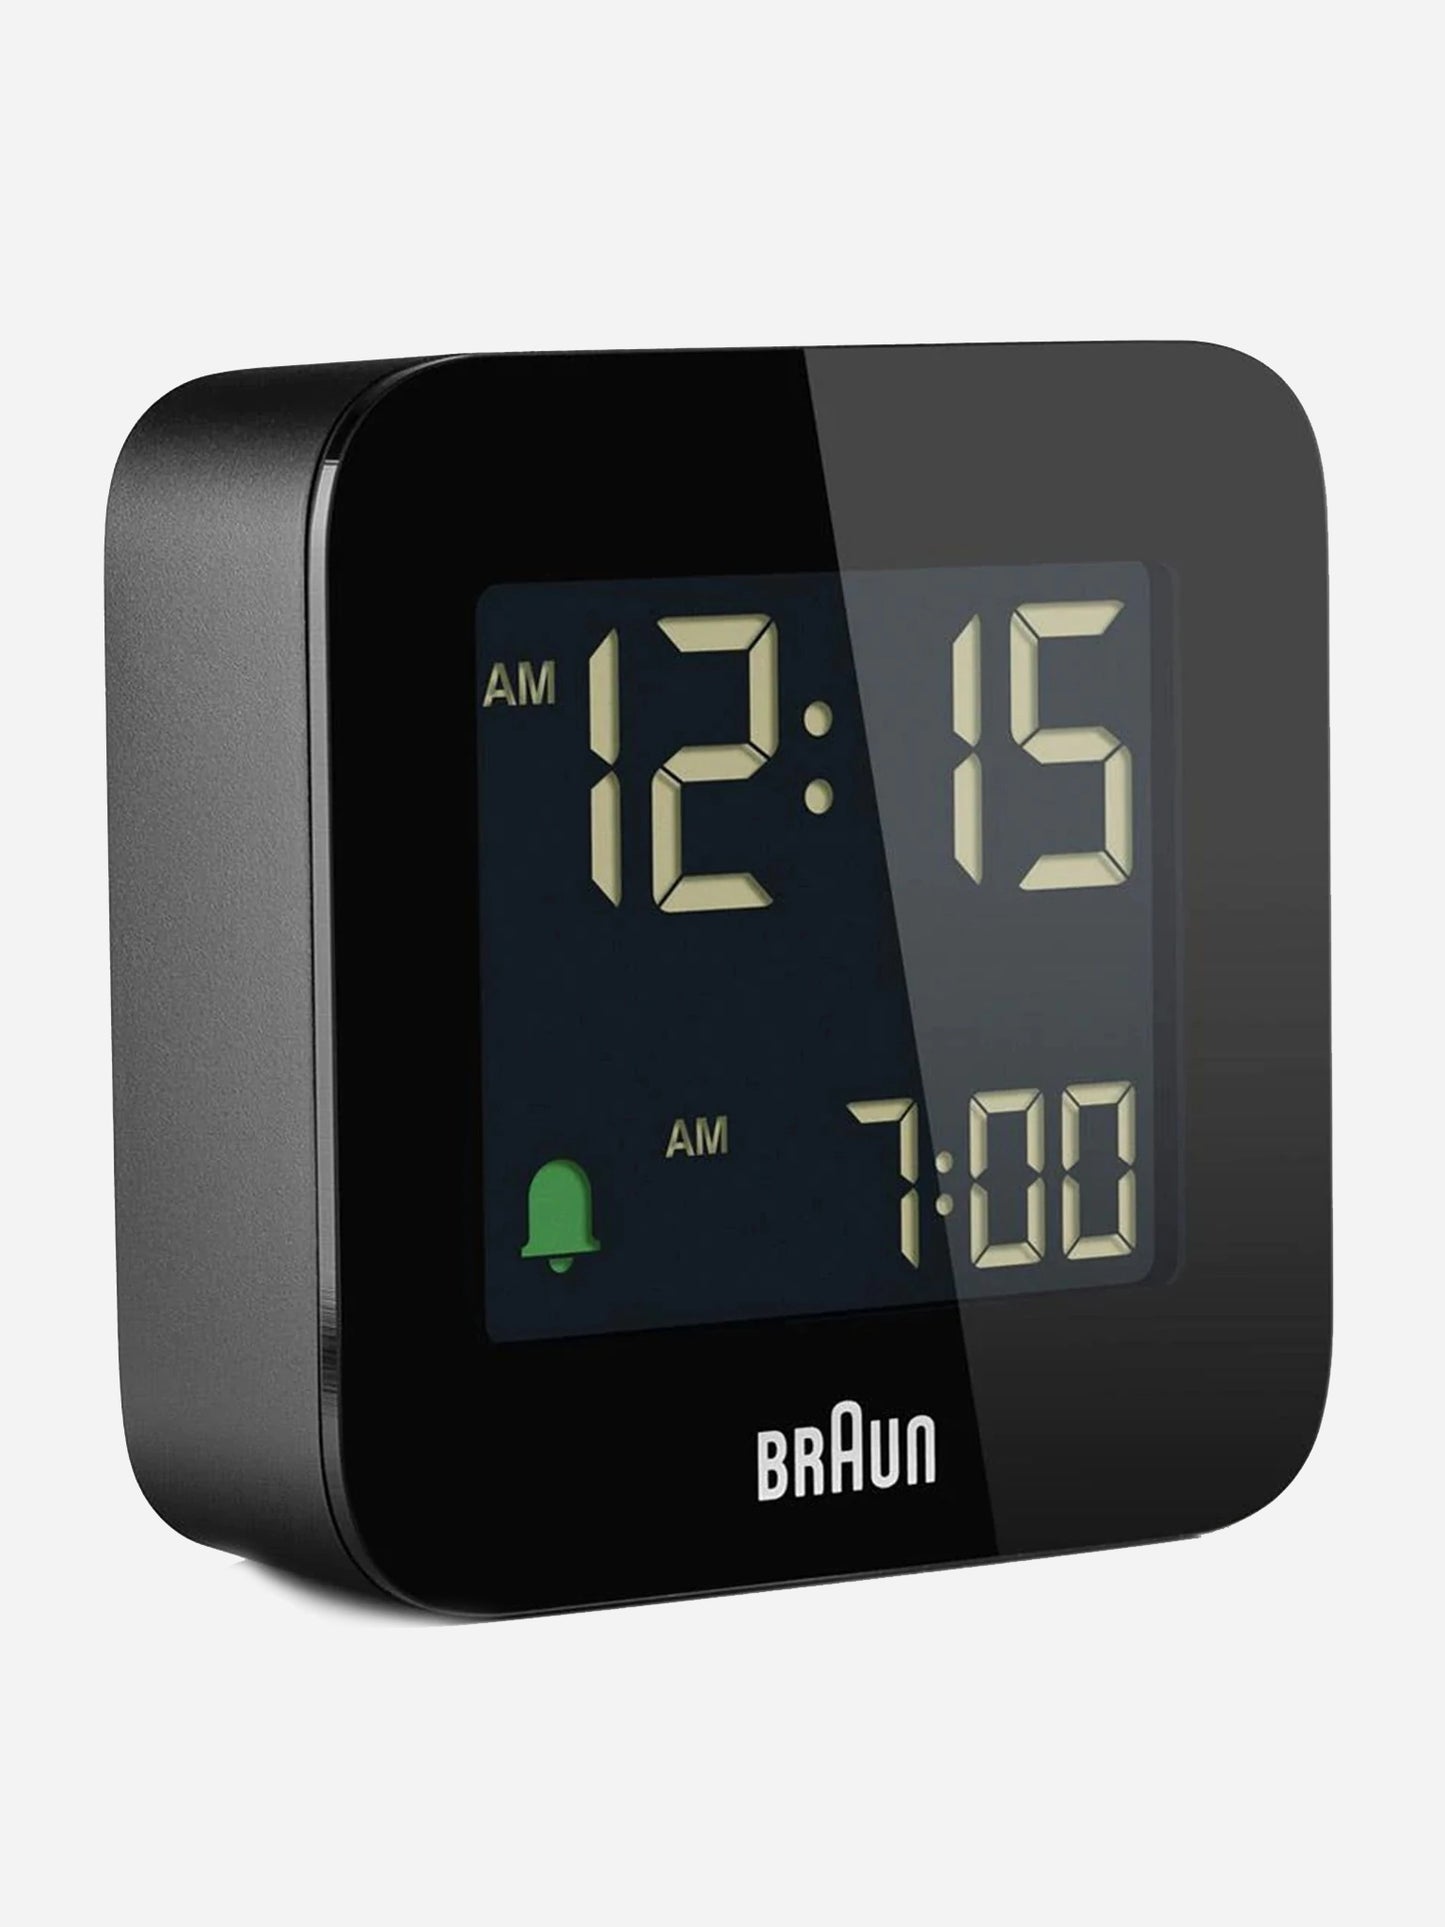 Braun Digital Alarm Clock